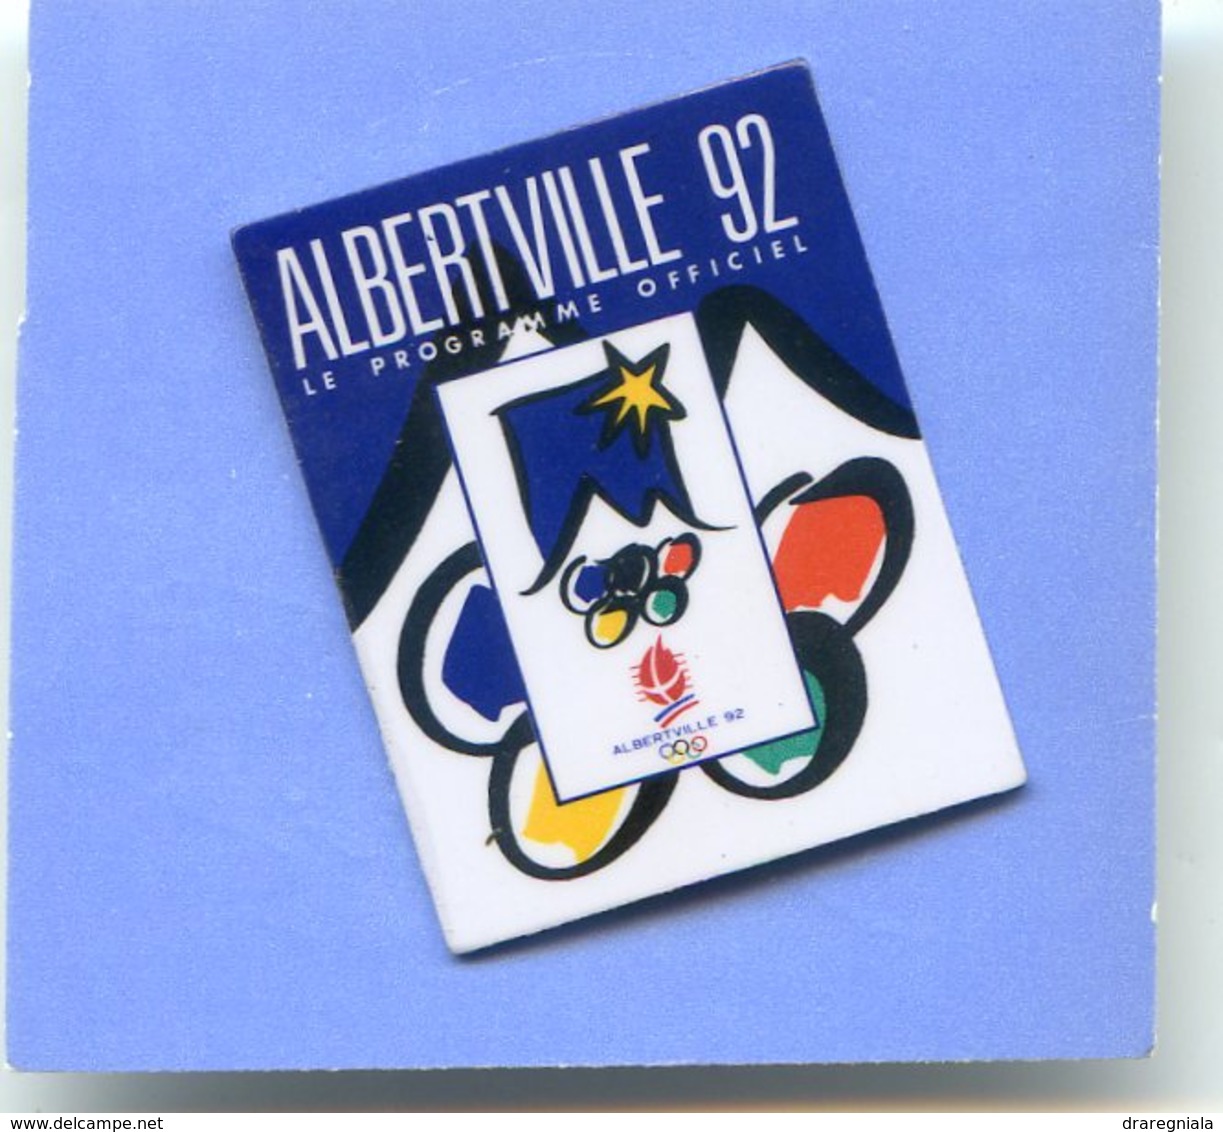 Jeux Olympiques - Albertville 92 - Le Programme Officiel - Jeux Olympiques